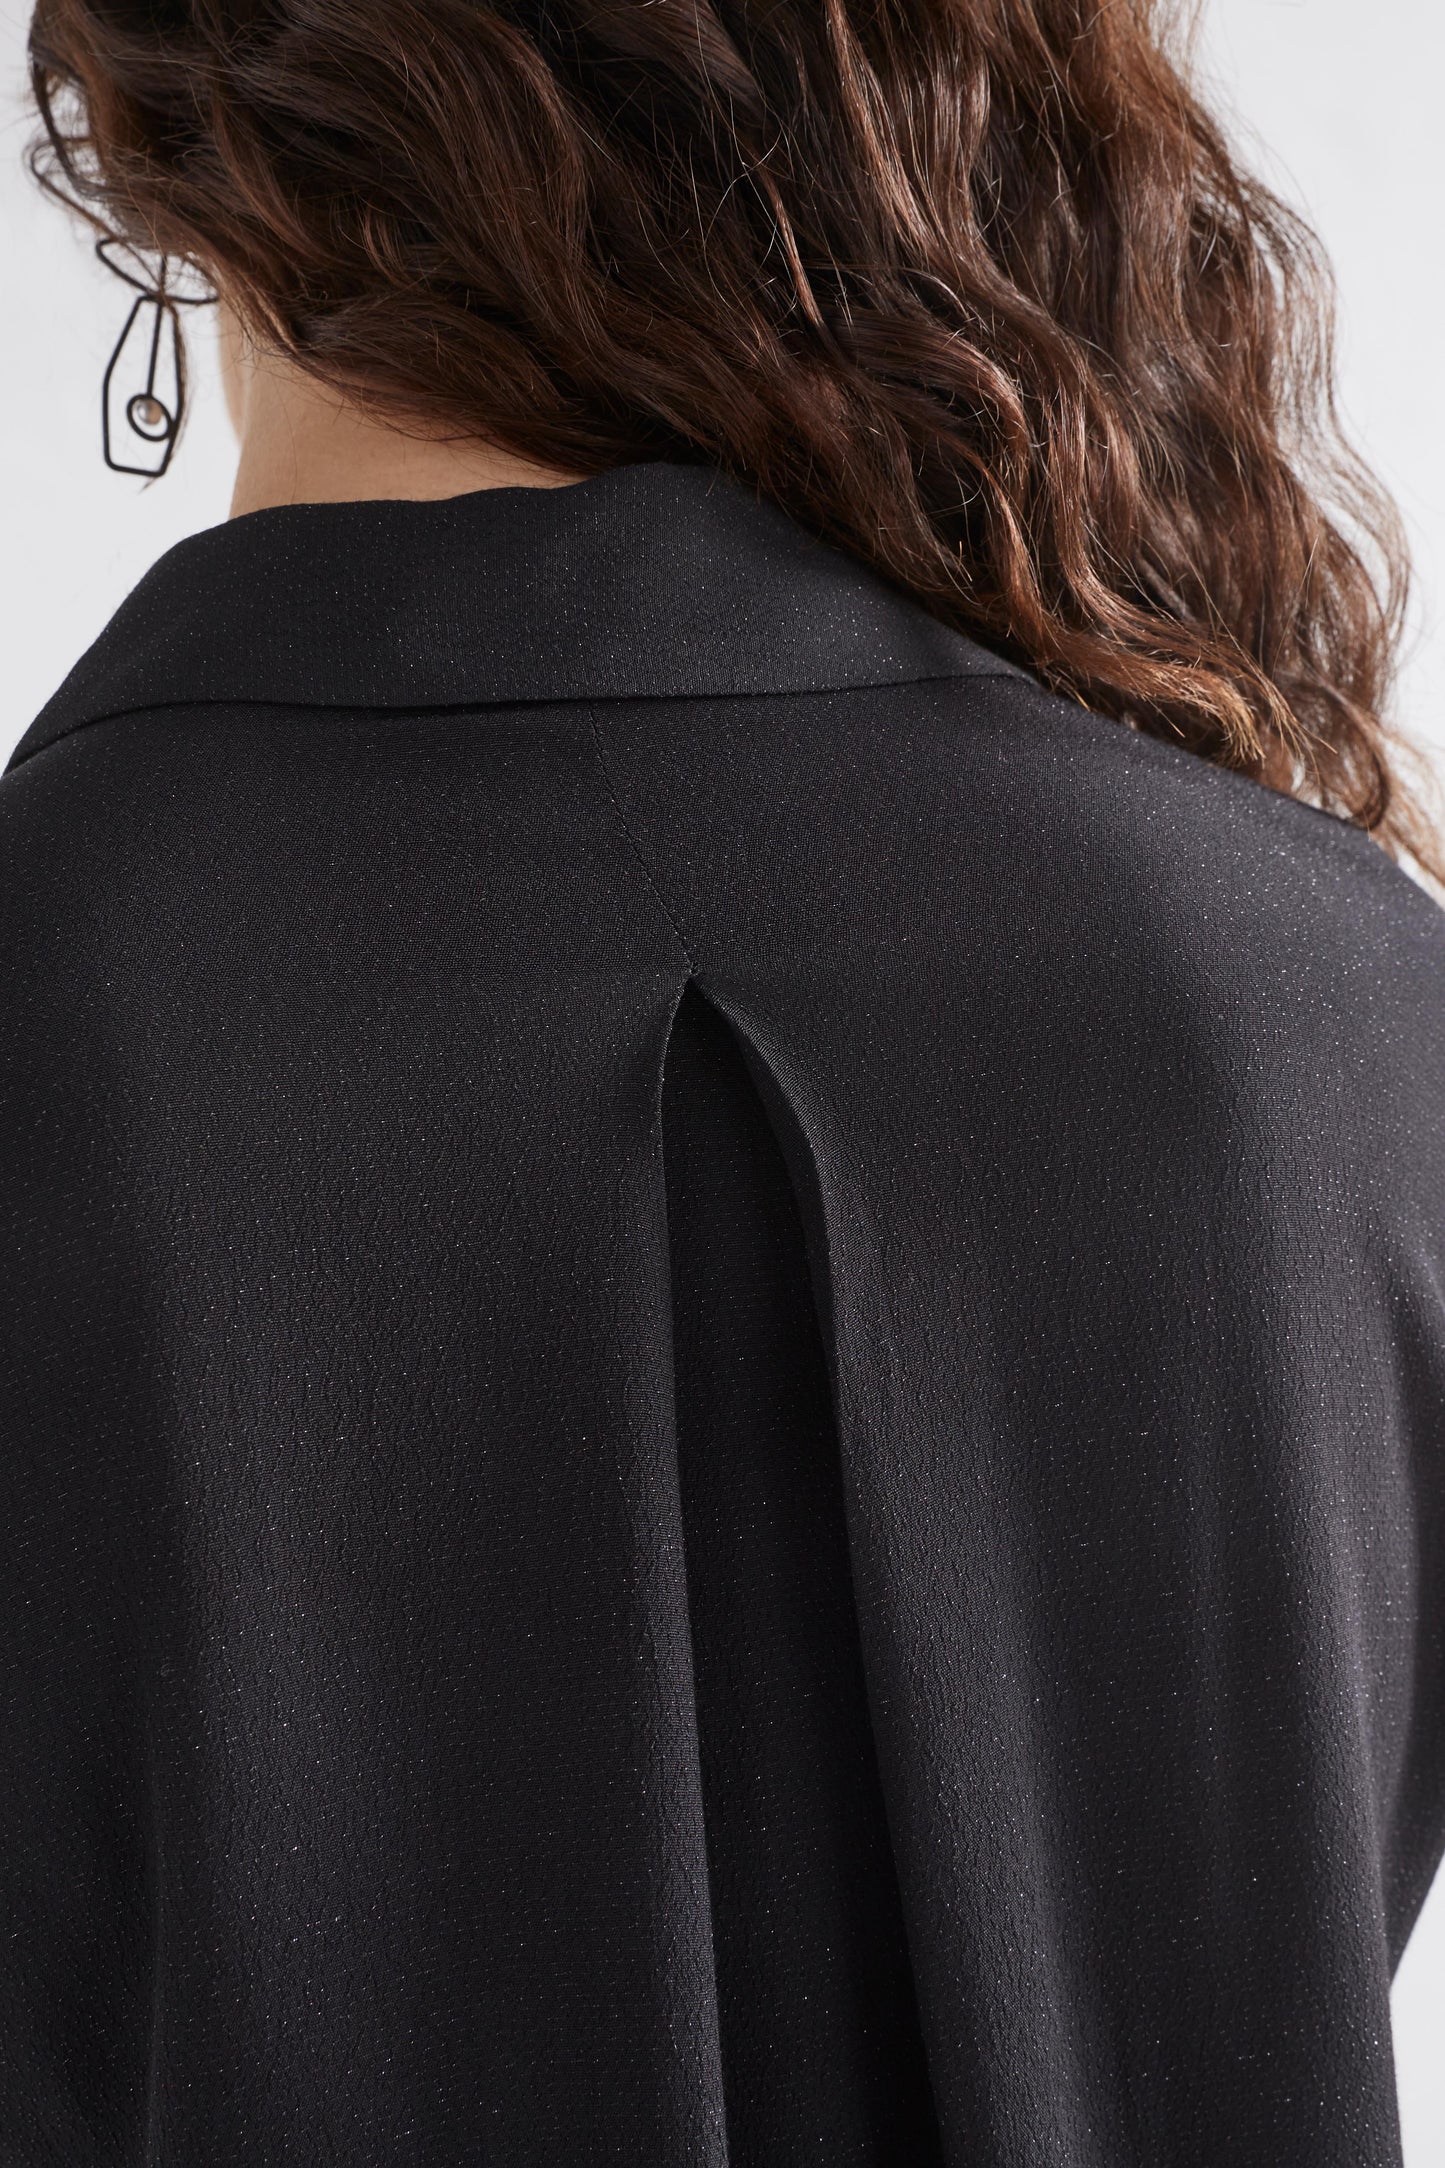 Blic Sheer Metallic Black Shirt Model  BAck Detail | BLACK METALLIC